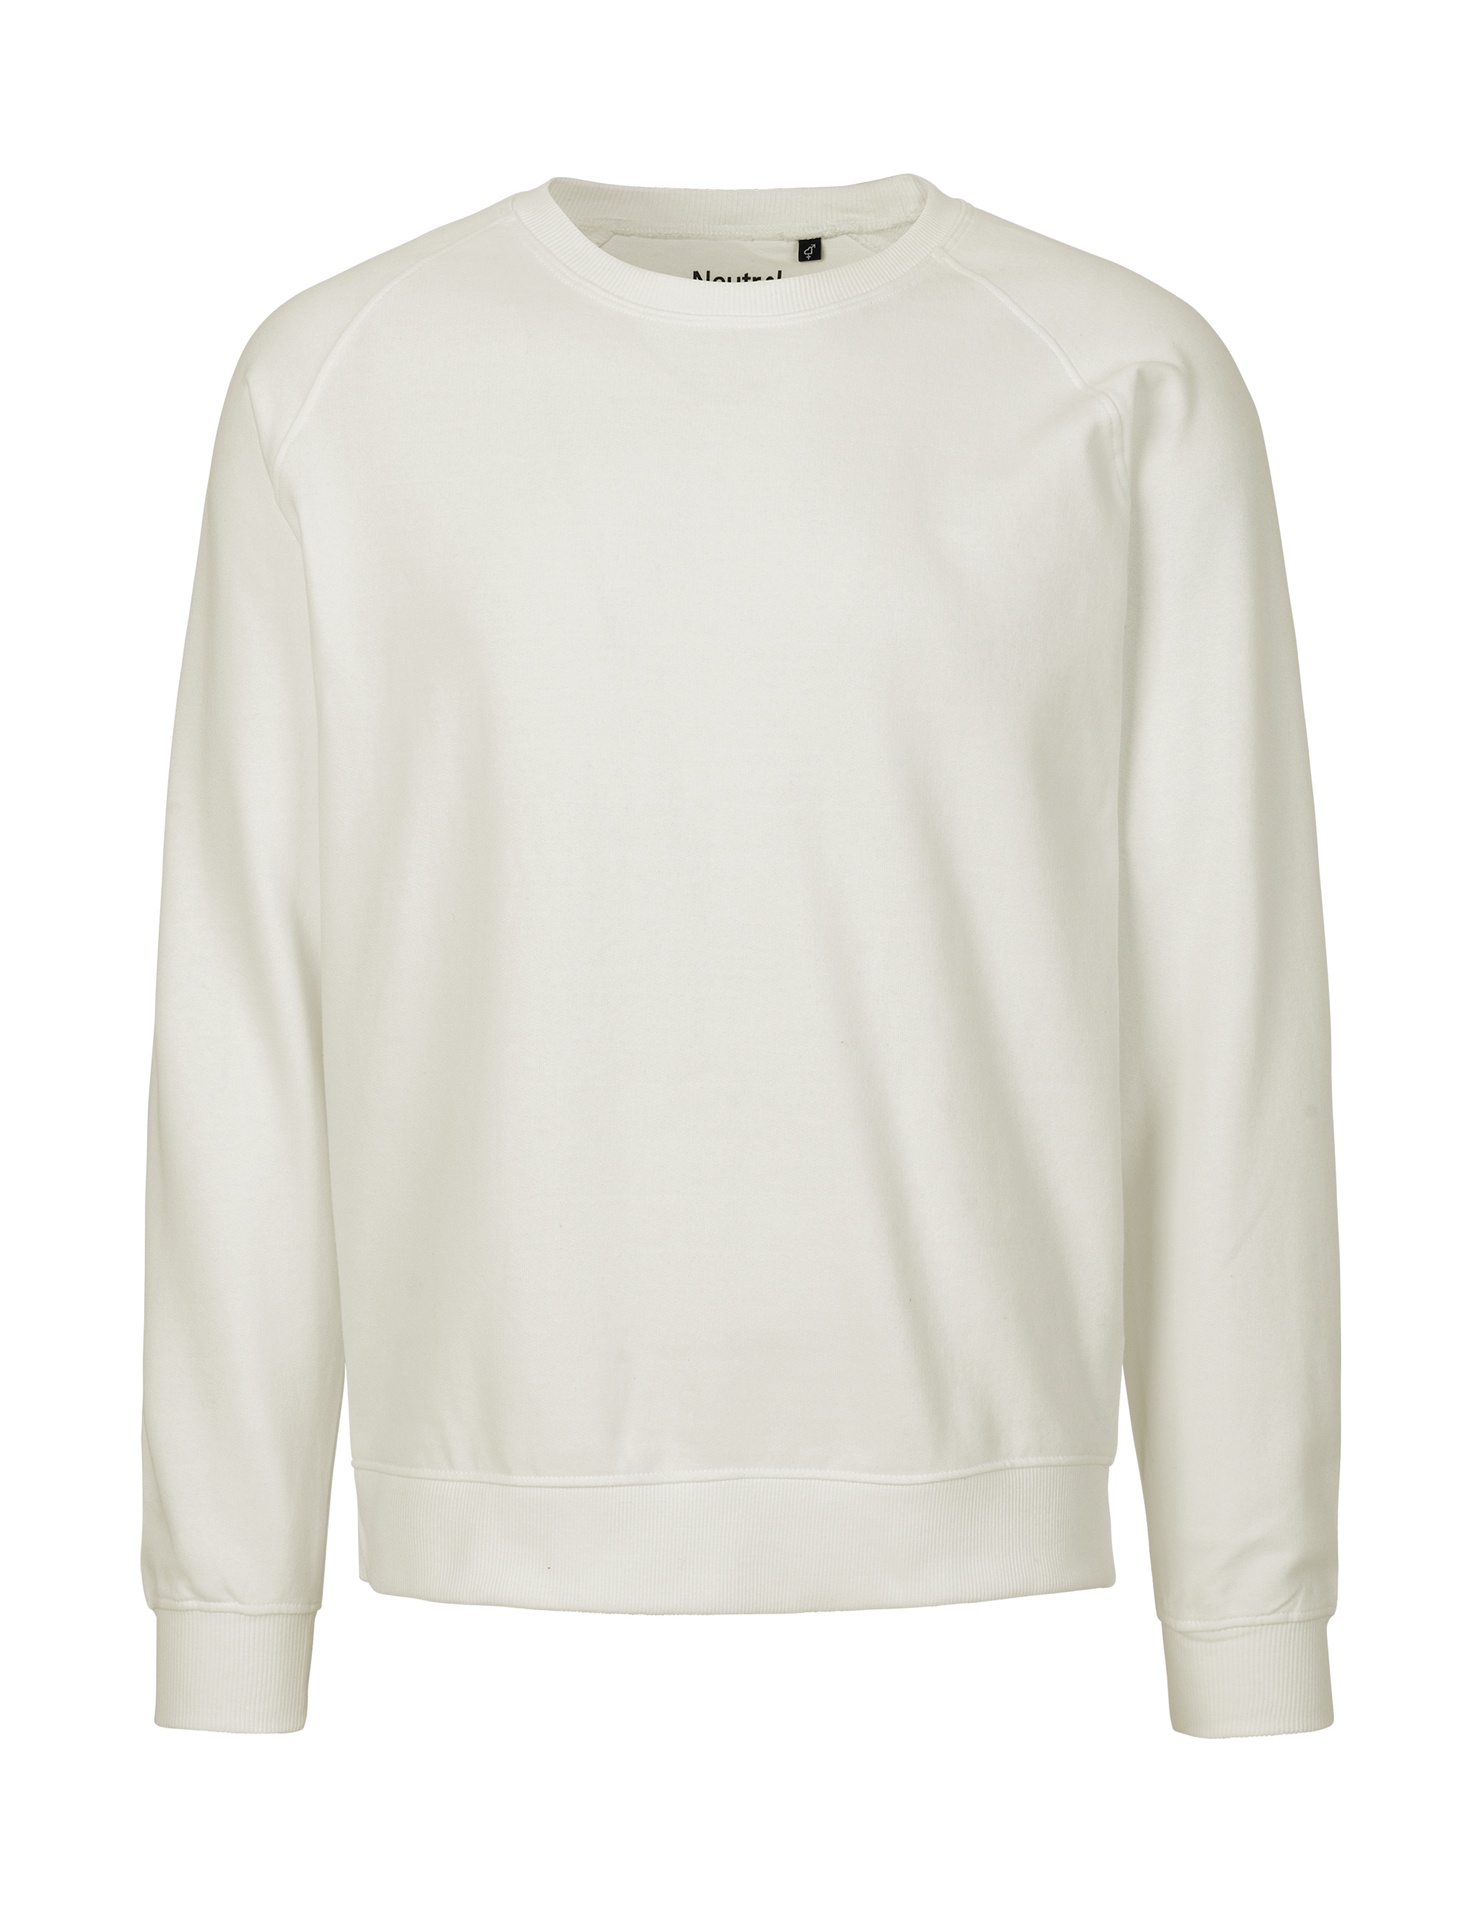 [PR/02649] Unisex Sweatshirt (Nature 00, 3XL)